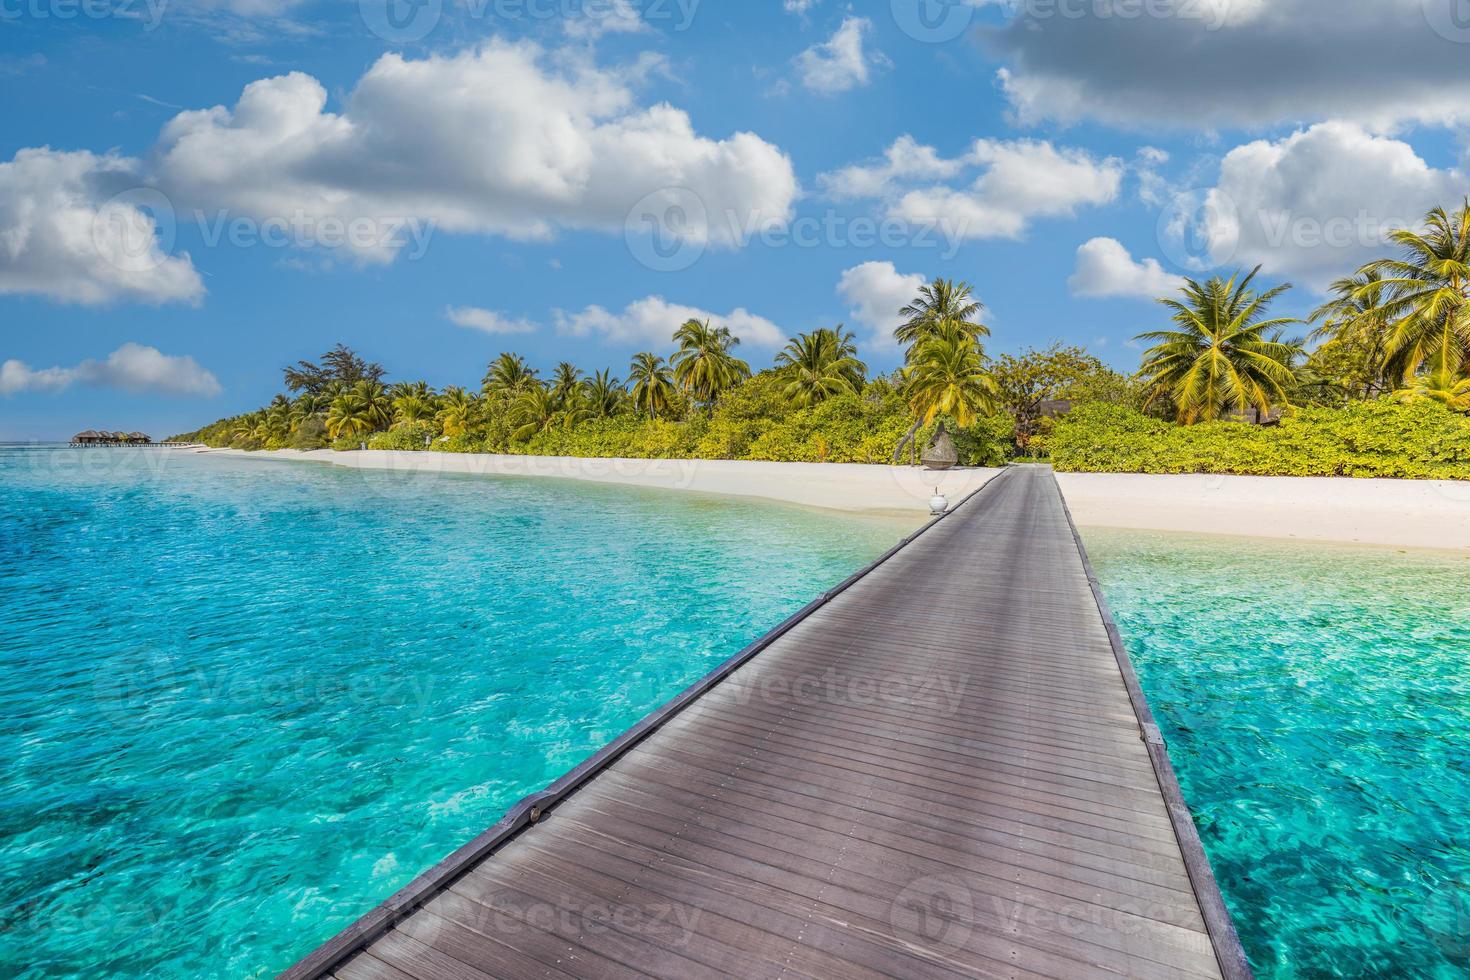 mooi tropisch Maldiven eiland met strand, exotisch zee en kokosnoot palm bomen Aan blauw lucht voor luxe natuur vakantie vakantie achtergrond concept. boost omhoog kleur verwerken. zomer reizen bestemming foto